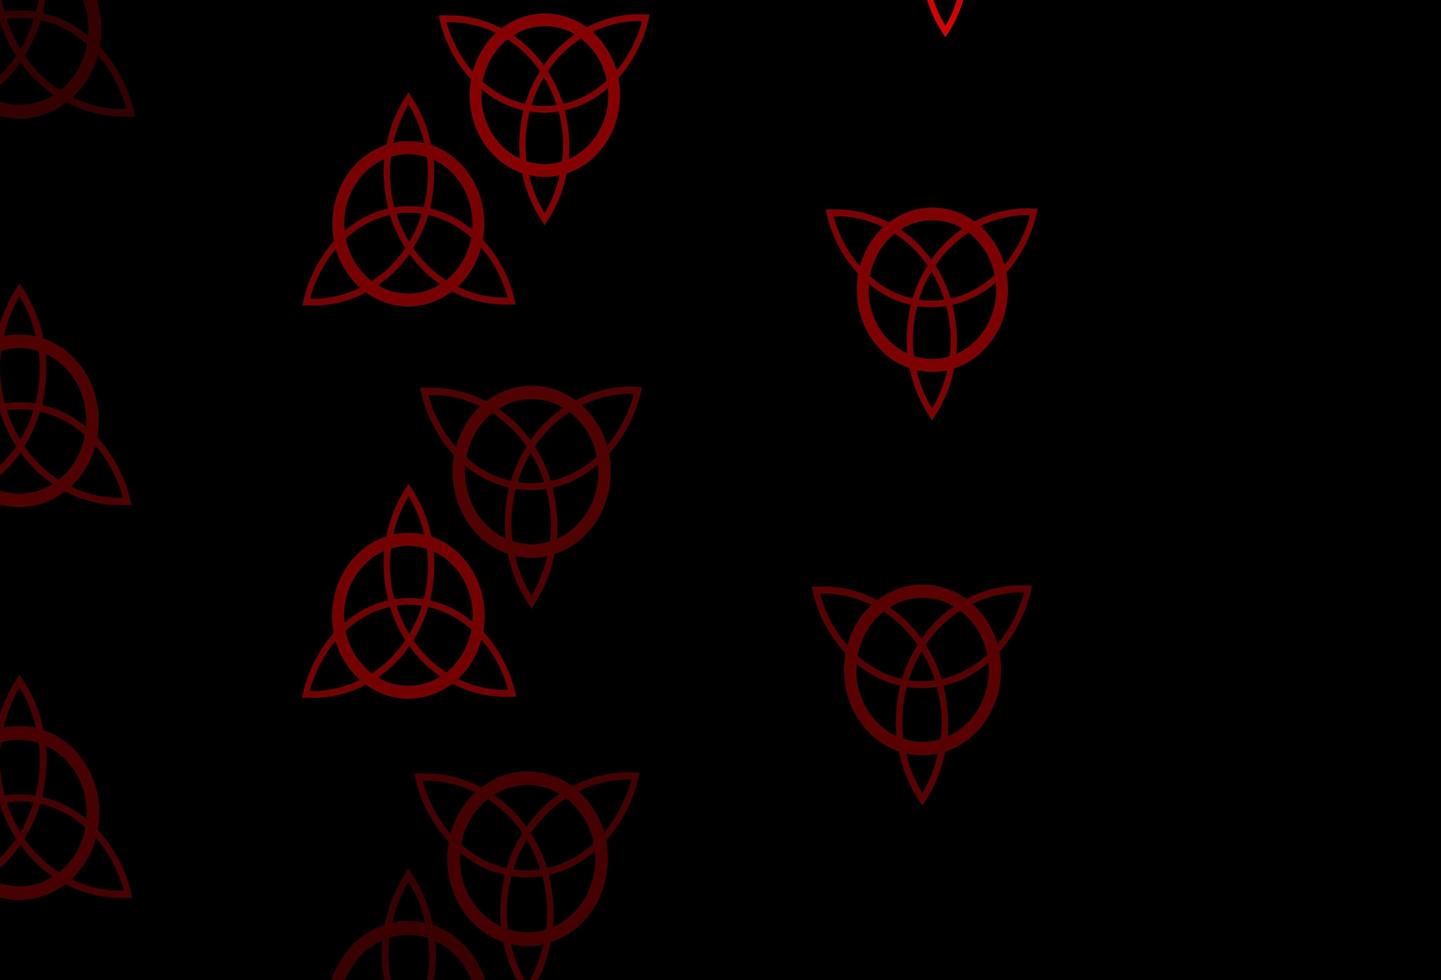 dunkelblauer, roter Vektorhintergrund mit Mysteriumsymbolen. vektor